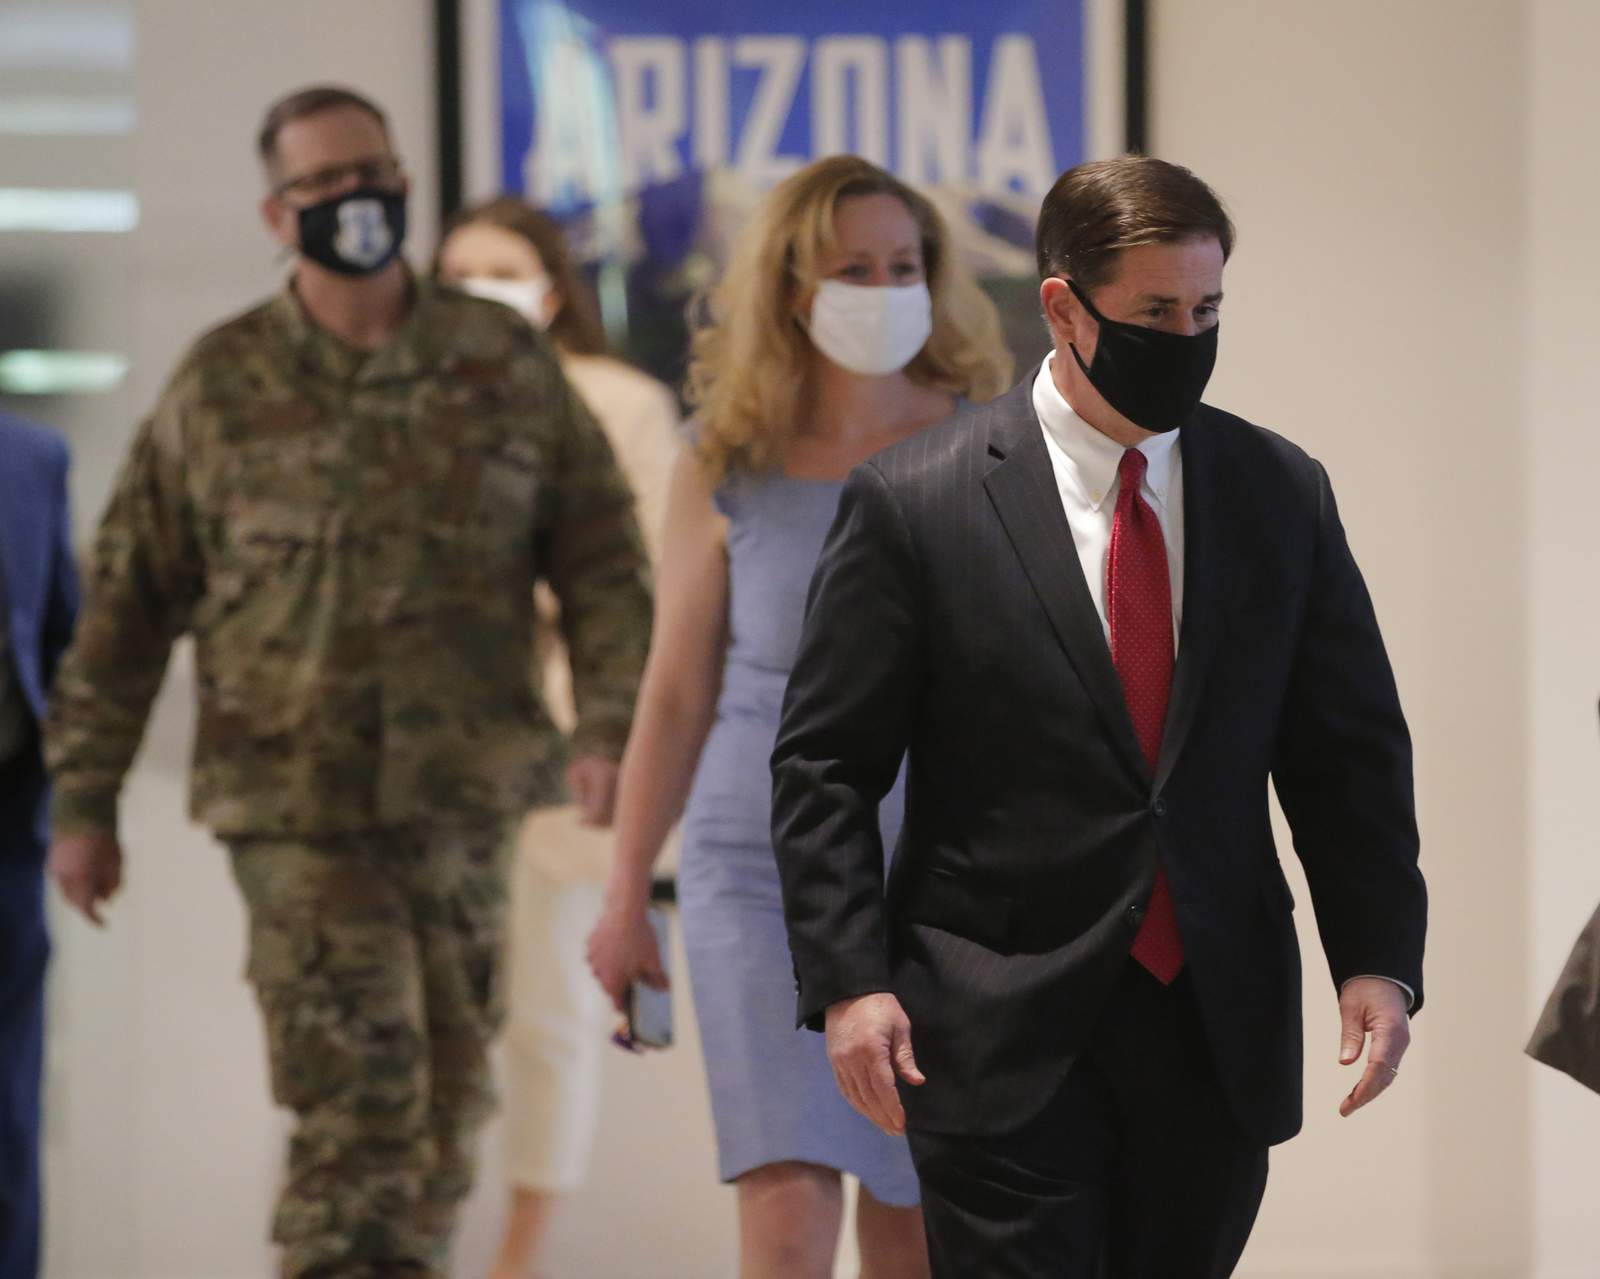 Phoenix mandates wearing masks amid surge of virus cases